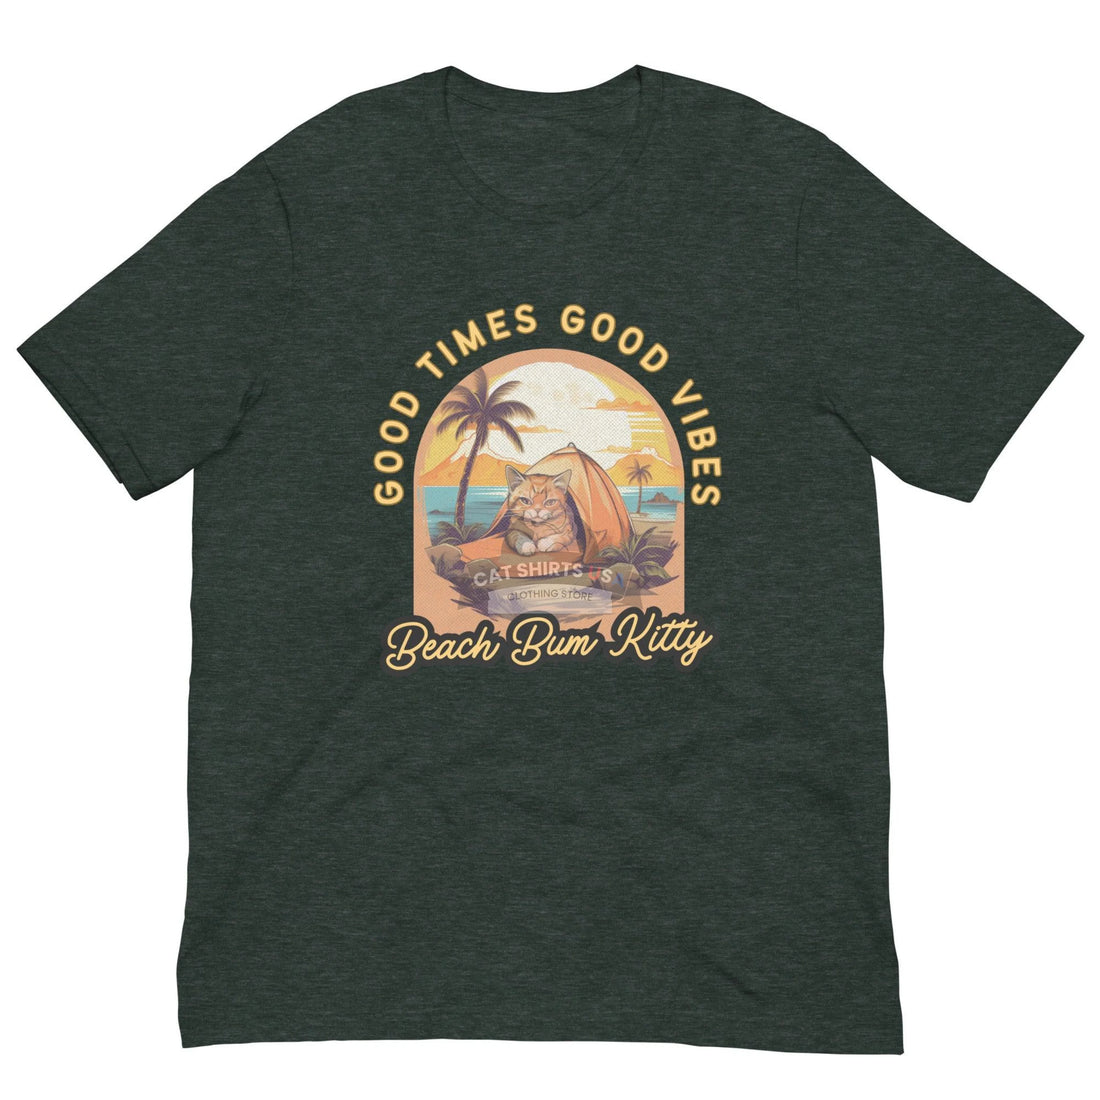 Beach Bum Kitty Cat Shirt - Cat Shirts USA